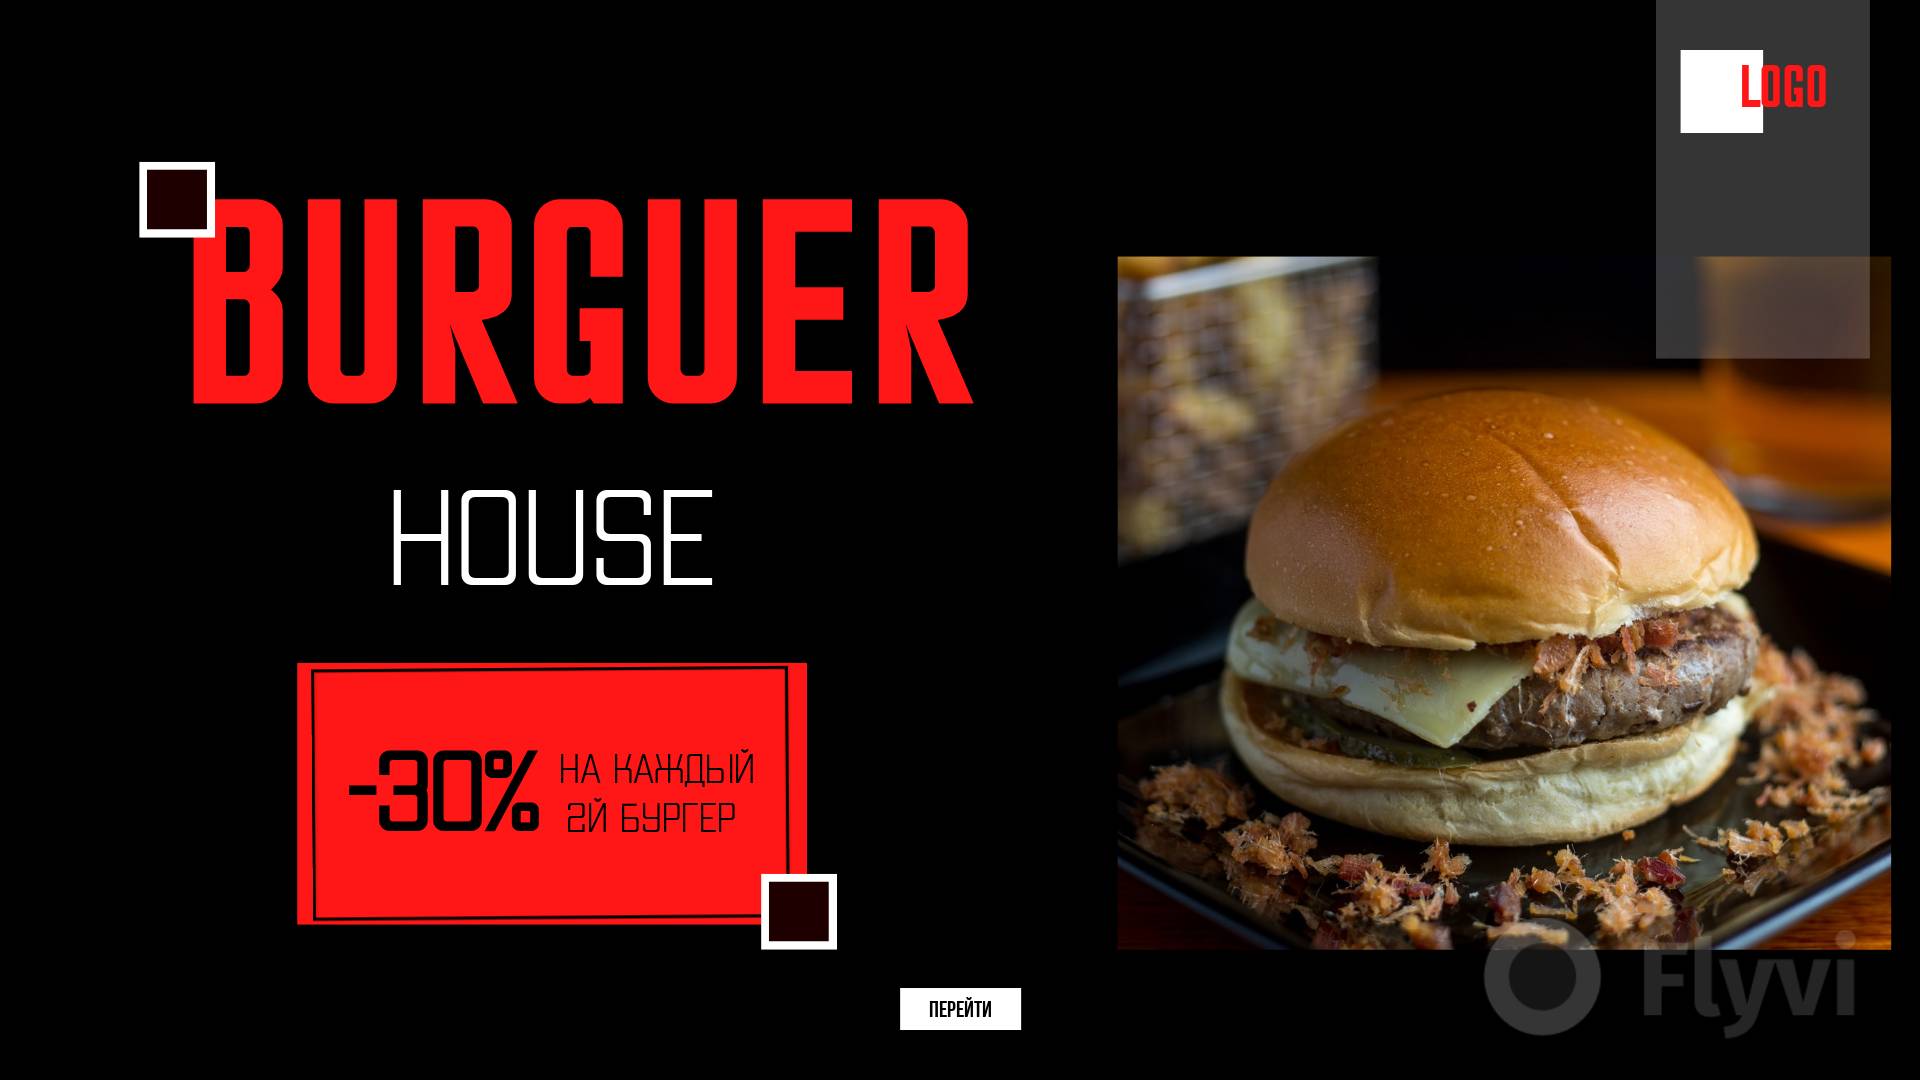 Черно-красный пост для рекламы burger house и скидкой 30% на заказ для рекламы открытия новой бургерной